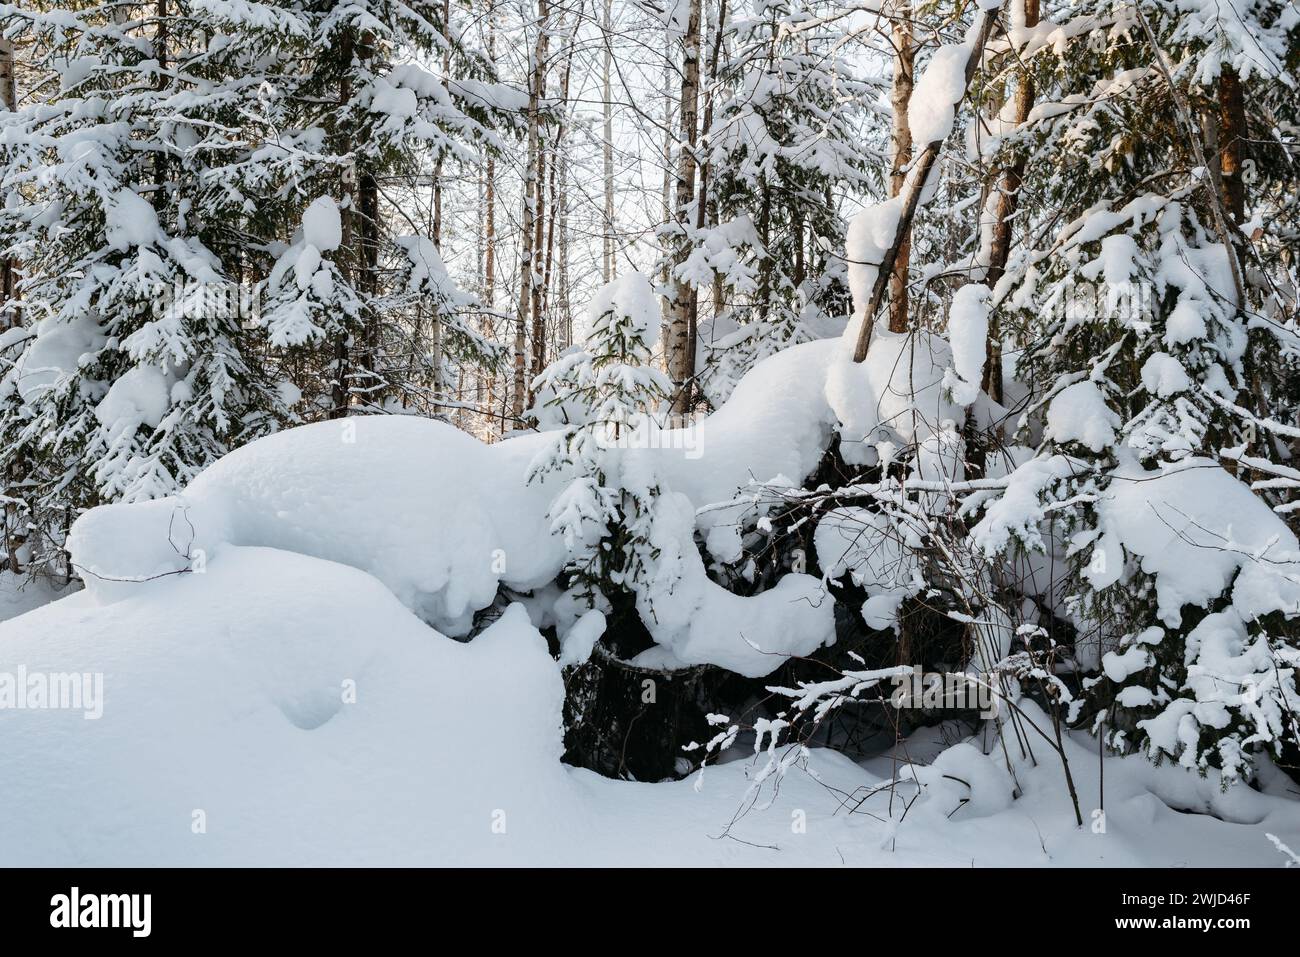 Paysage. L'hiver s'étend sur une journée ensoleillée glaciale. Les arbres sont recouverts d'une épaisse couche de neige. Banque D'Images